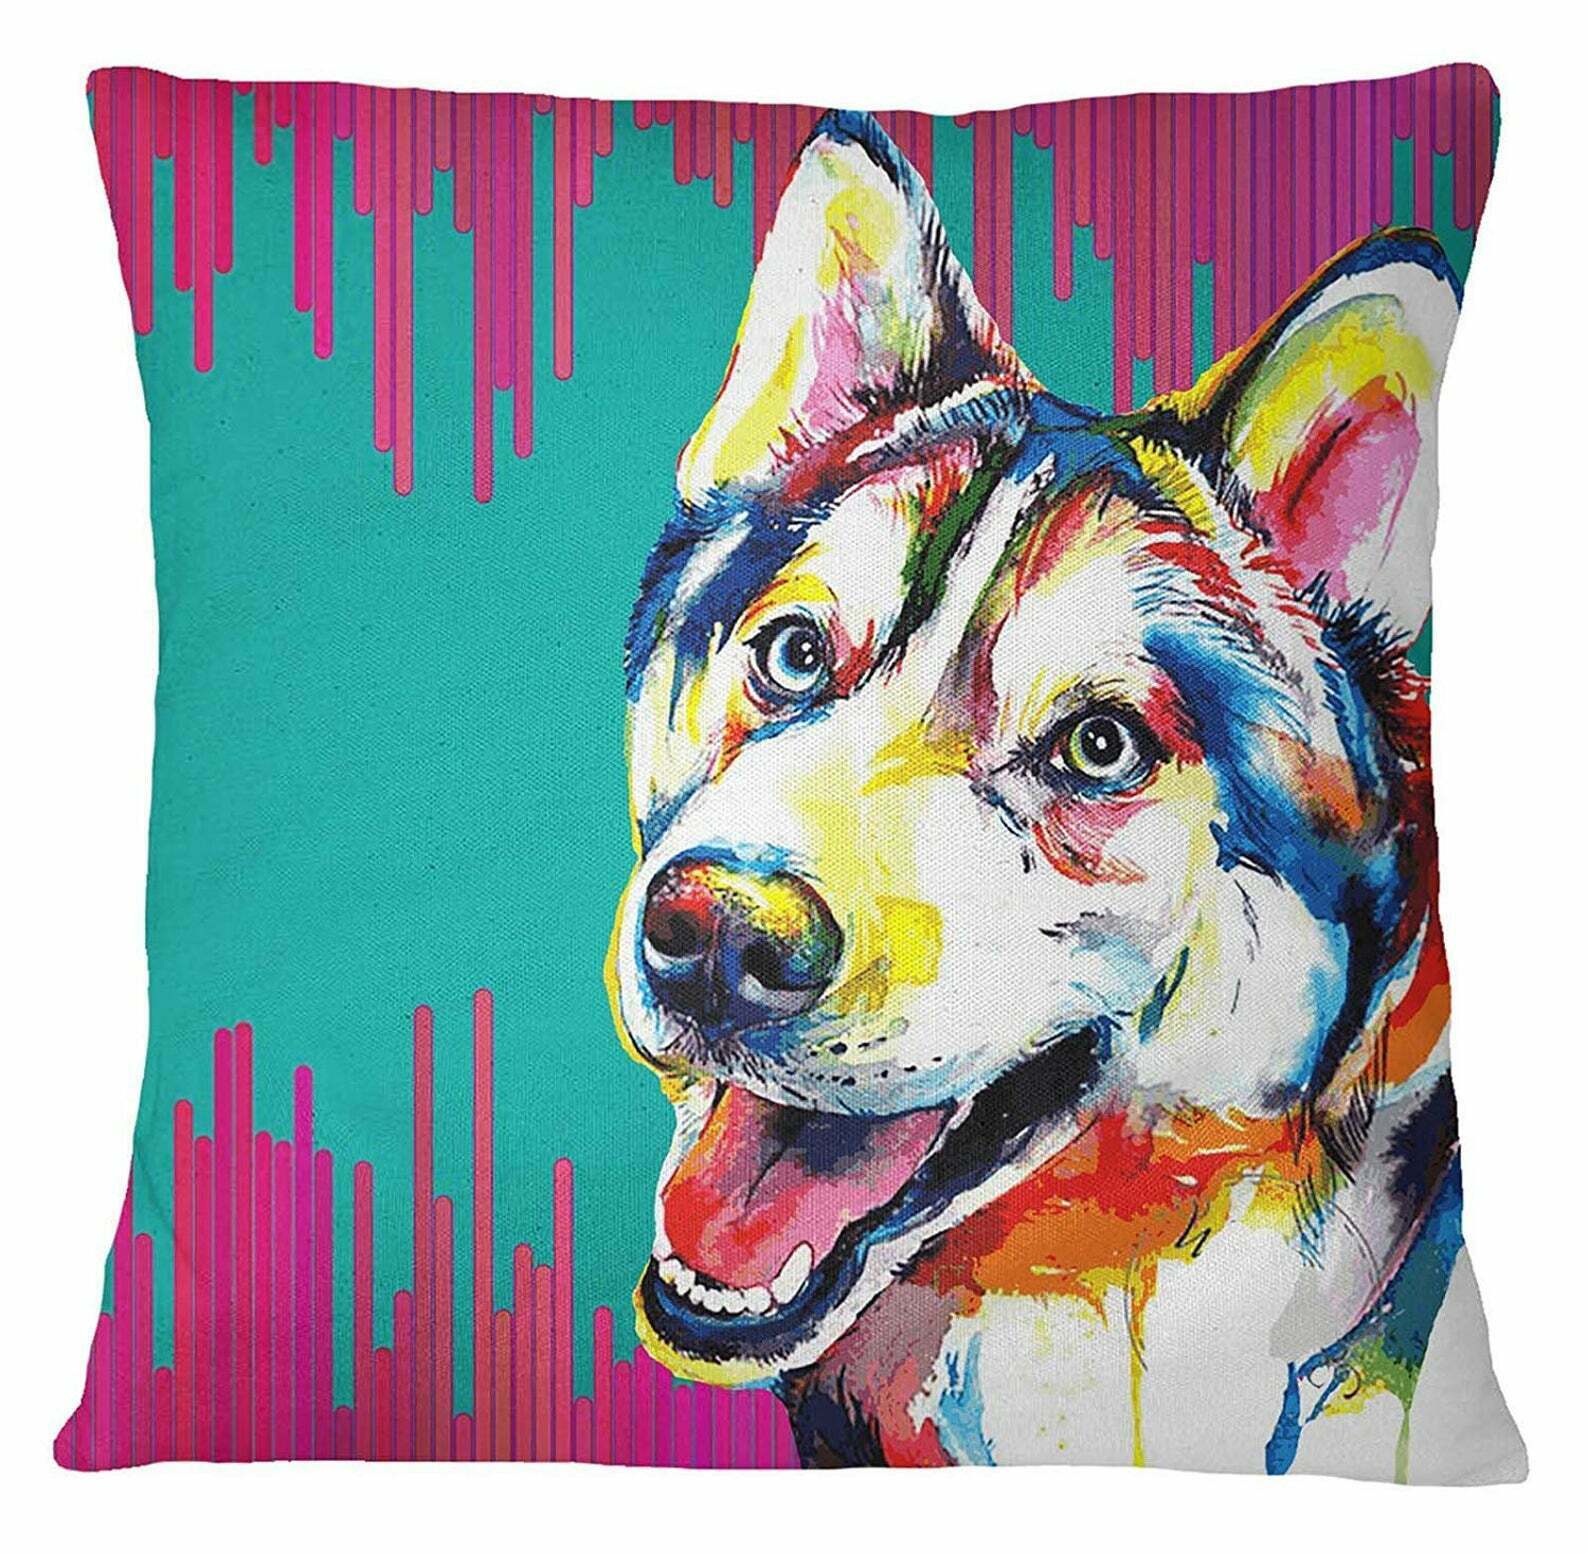 Husky Dog Square Pillow Cover Home Decor